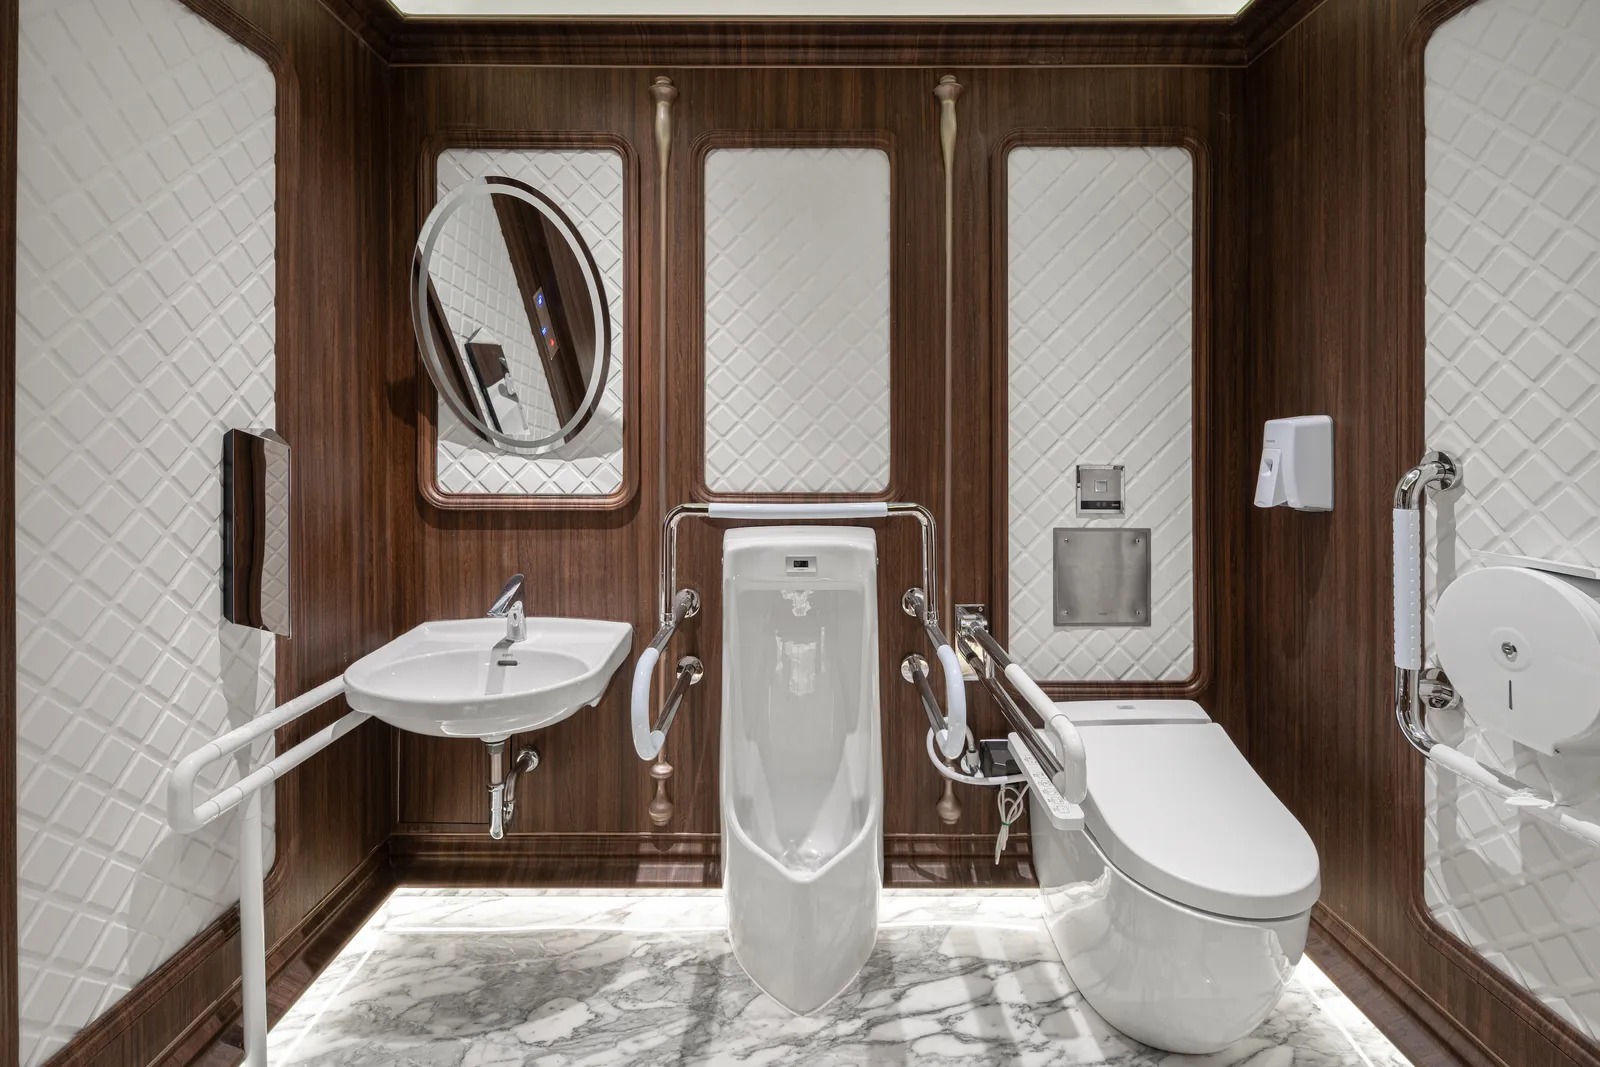 Khu vực vệ sinh được thiết kế phù hợp với mọi đối tượng khách hàng